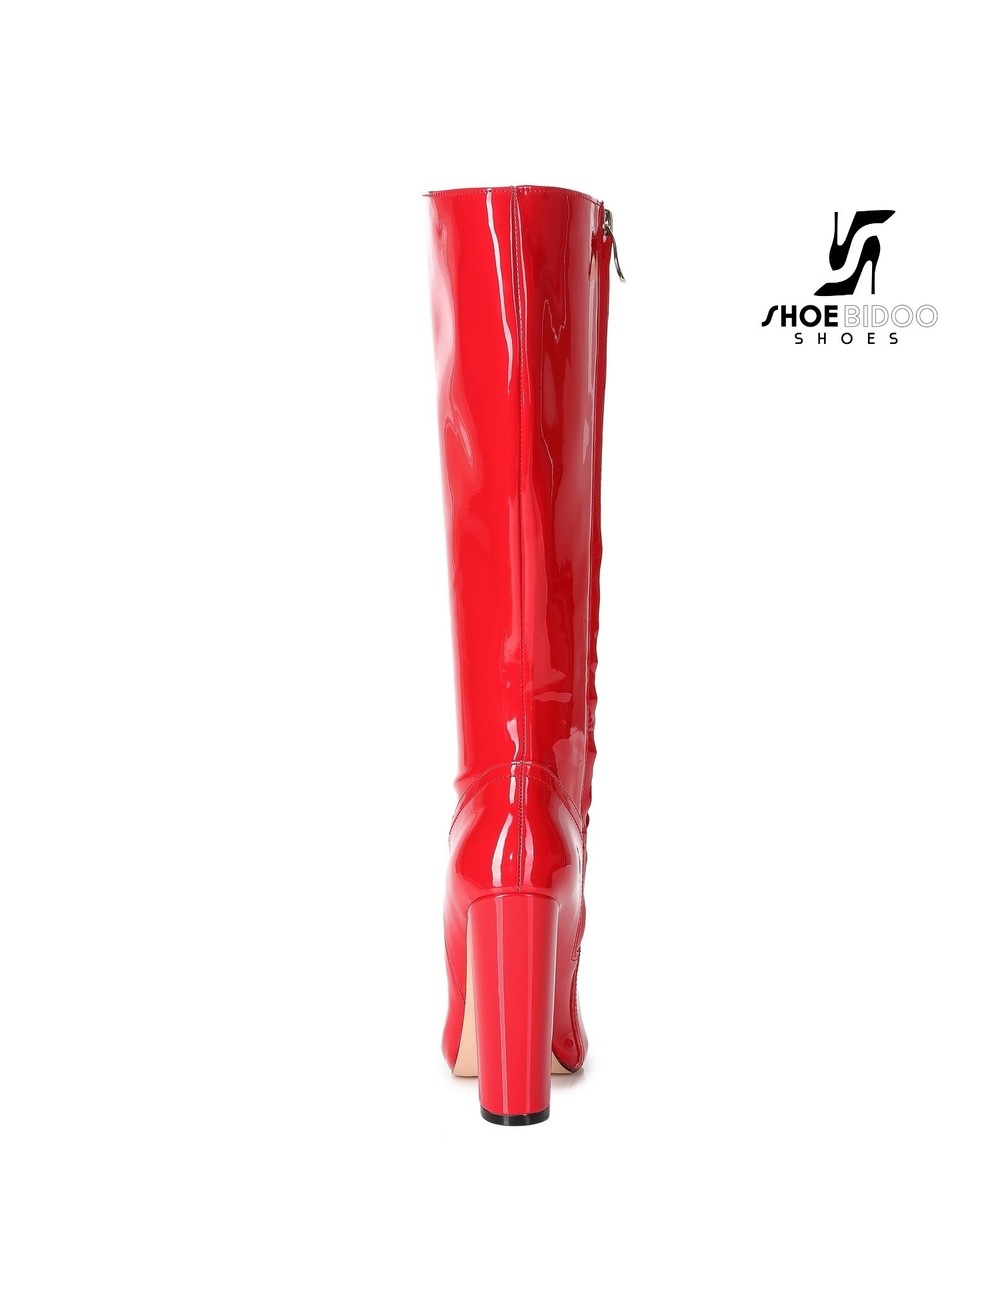 Giaro Giaro fashion knee boots TAKEN in red patent